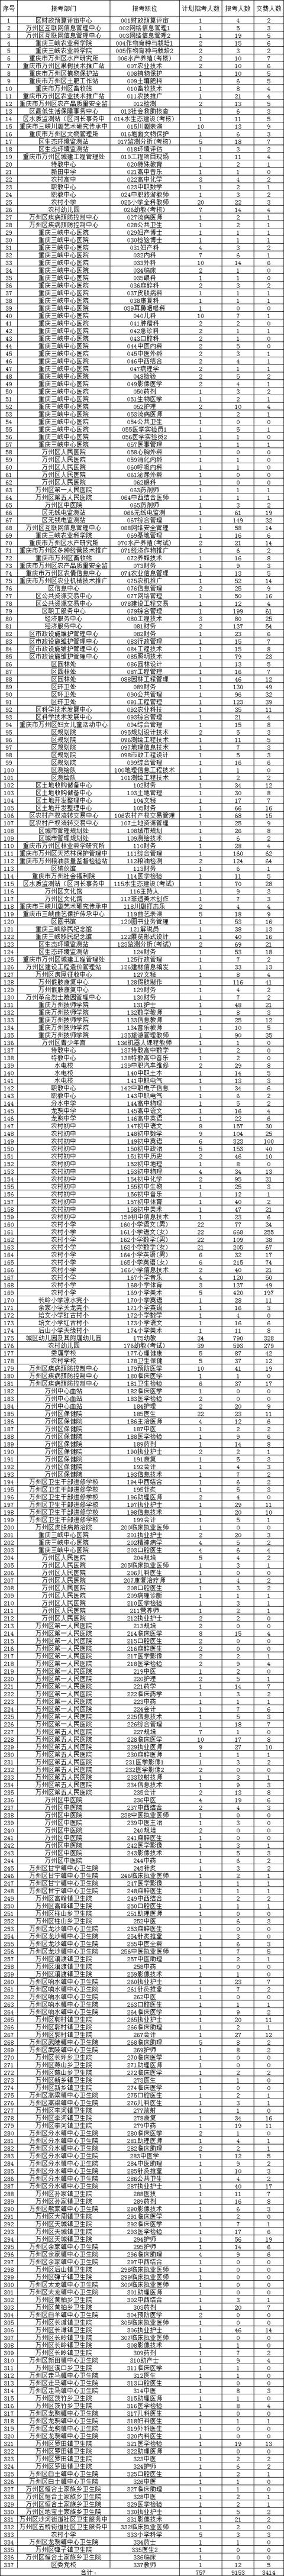 万州幼儿园招聘信息(73个岗位无人缴费)-深圳富士康员工真实工资